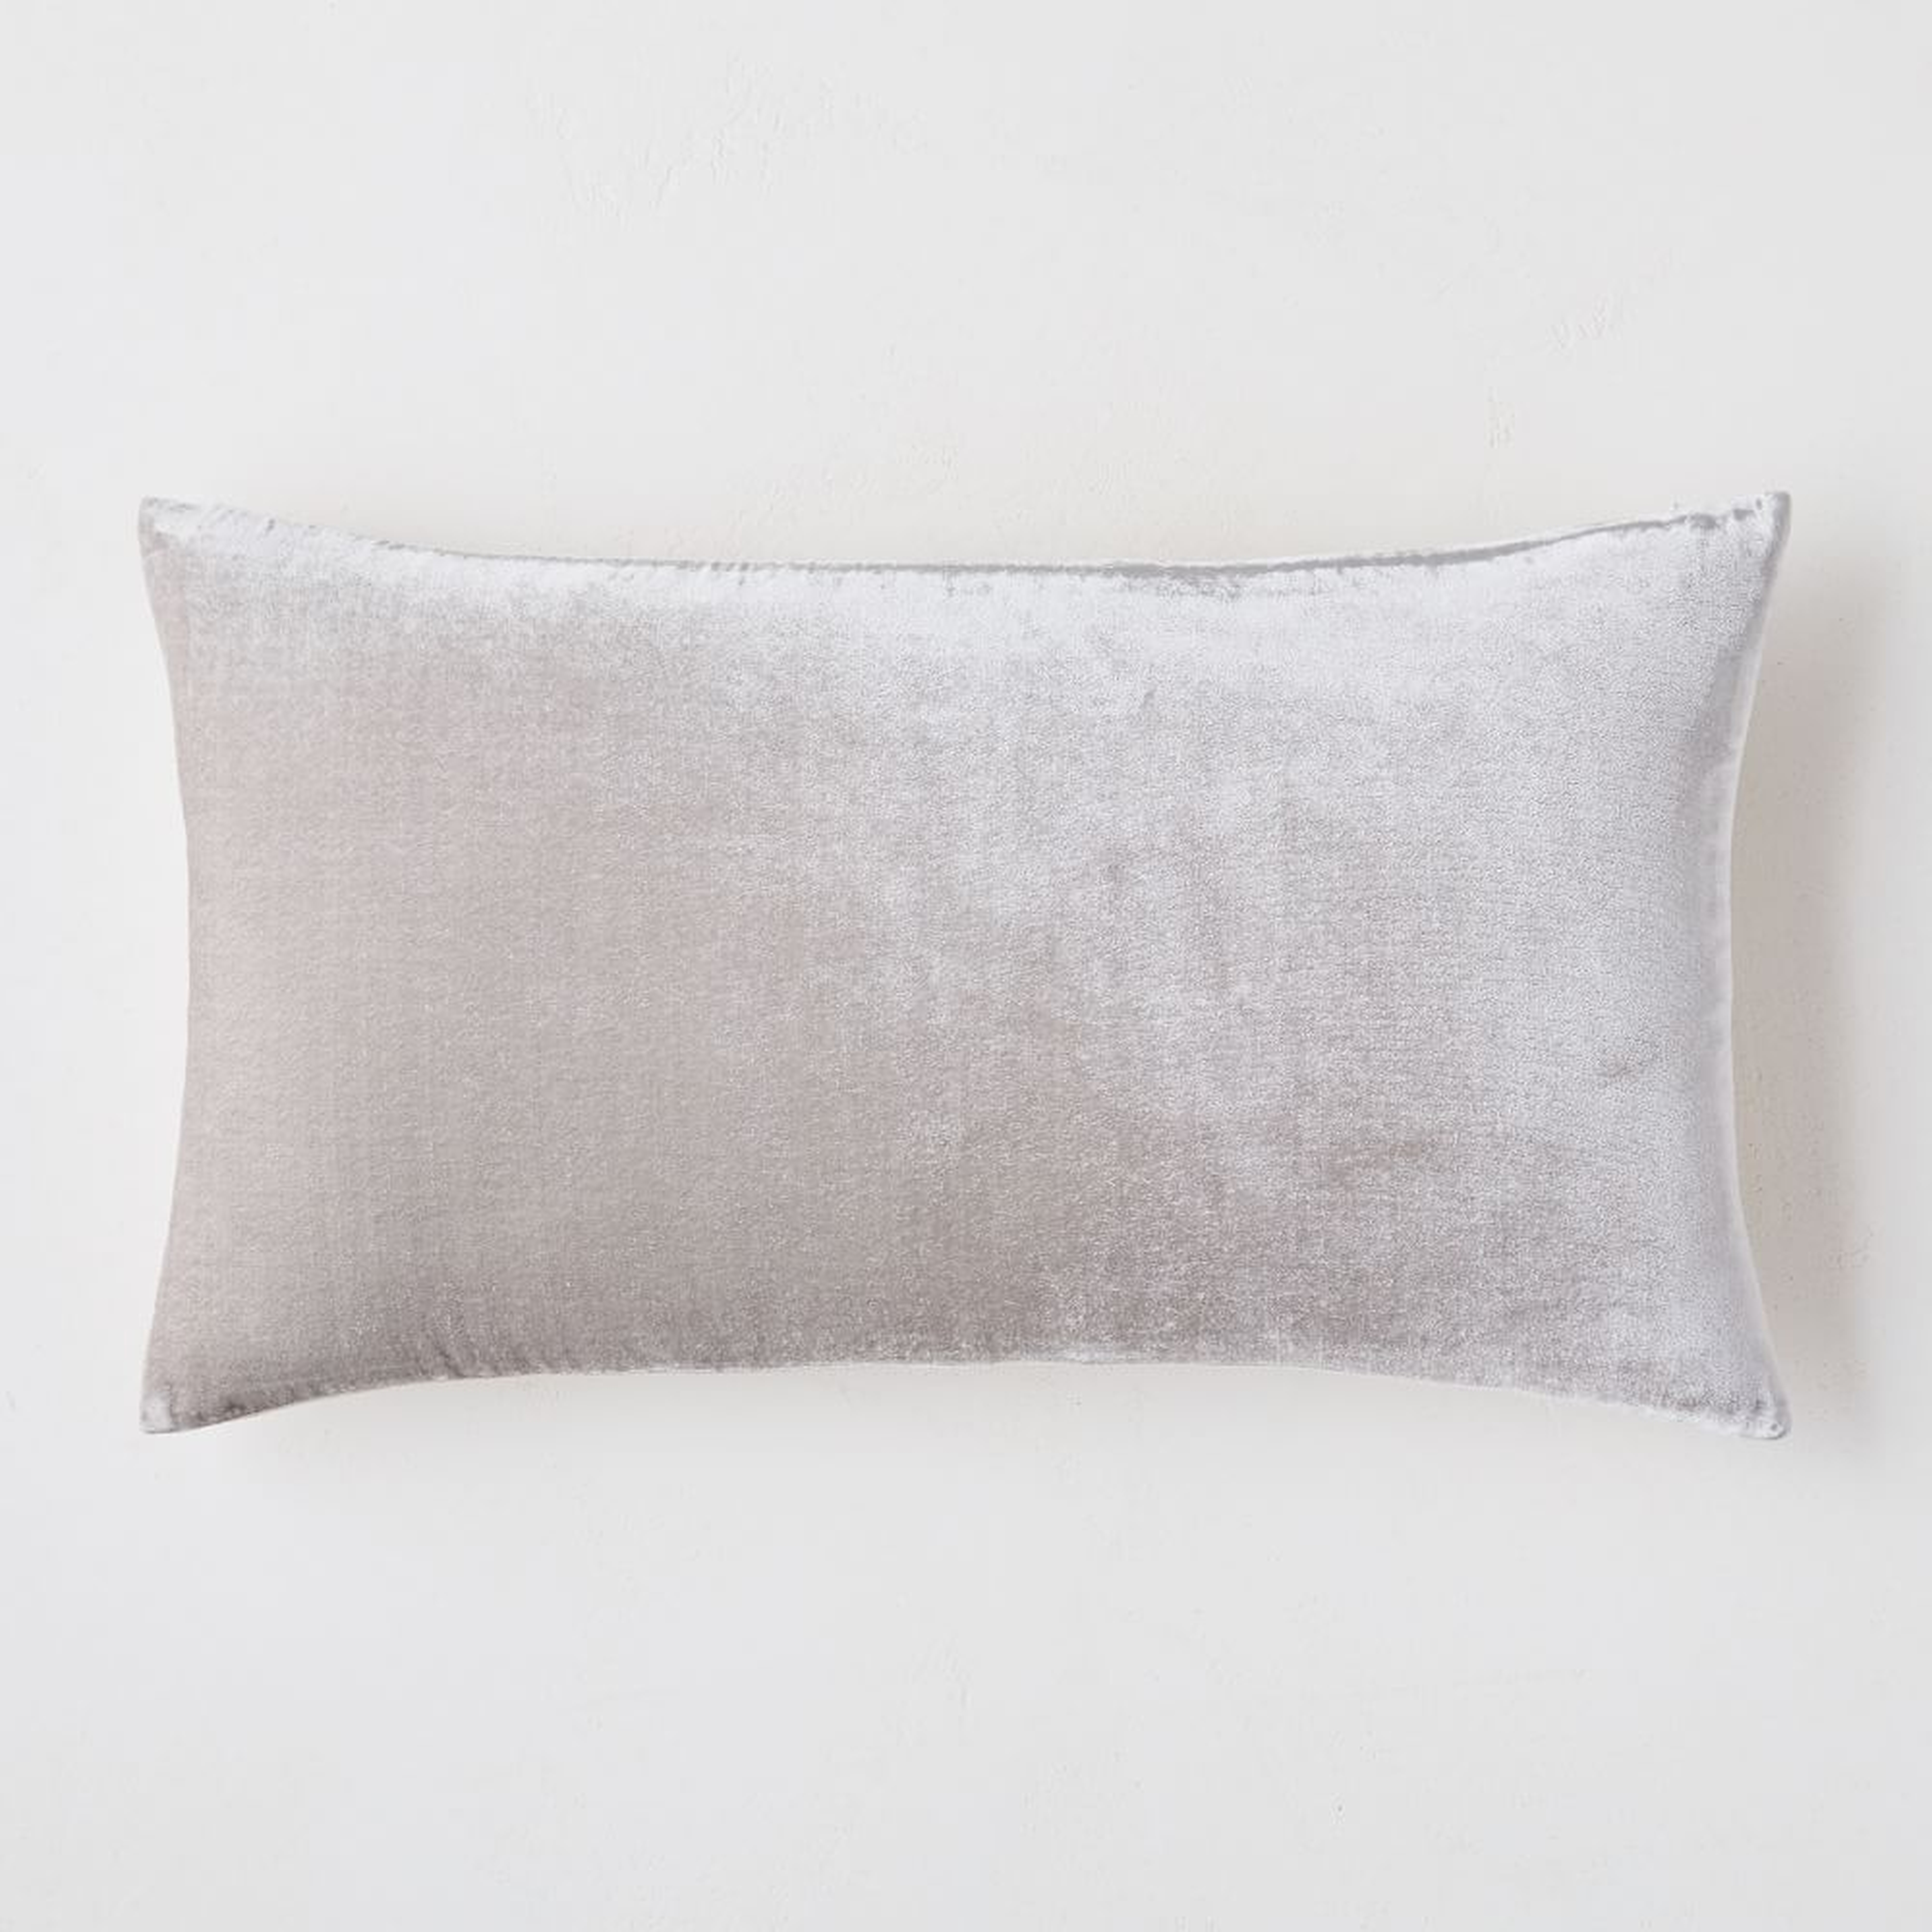 Lush Velvet Pillow Cover, 12"x21", Pearl Gray - West Elm